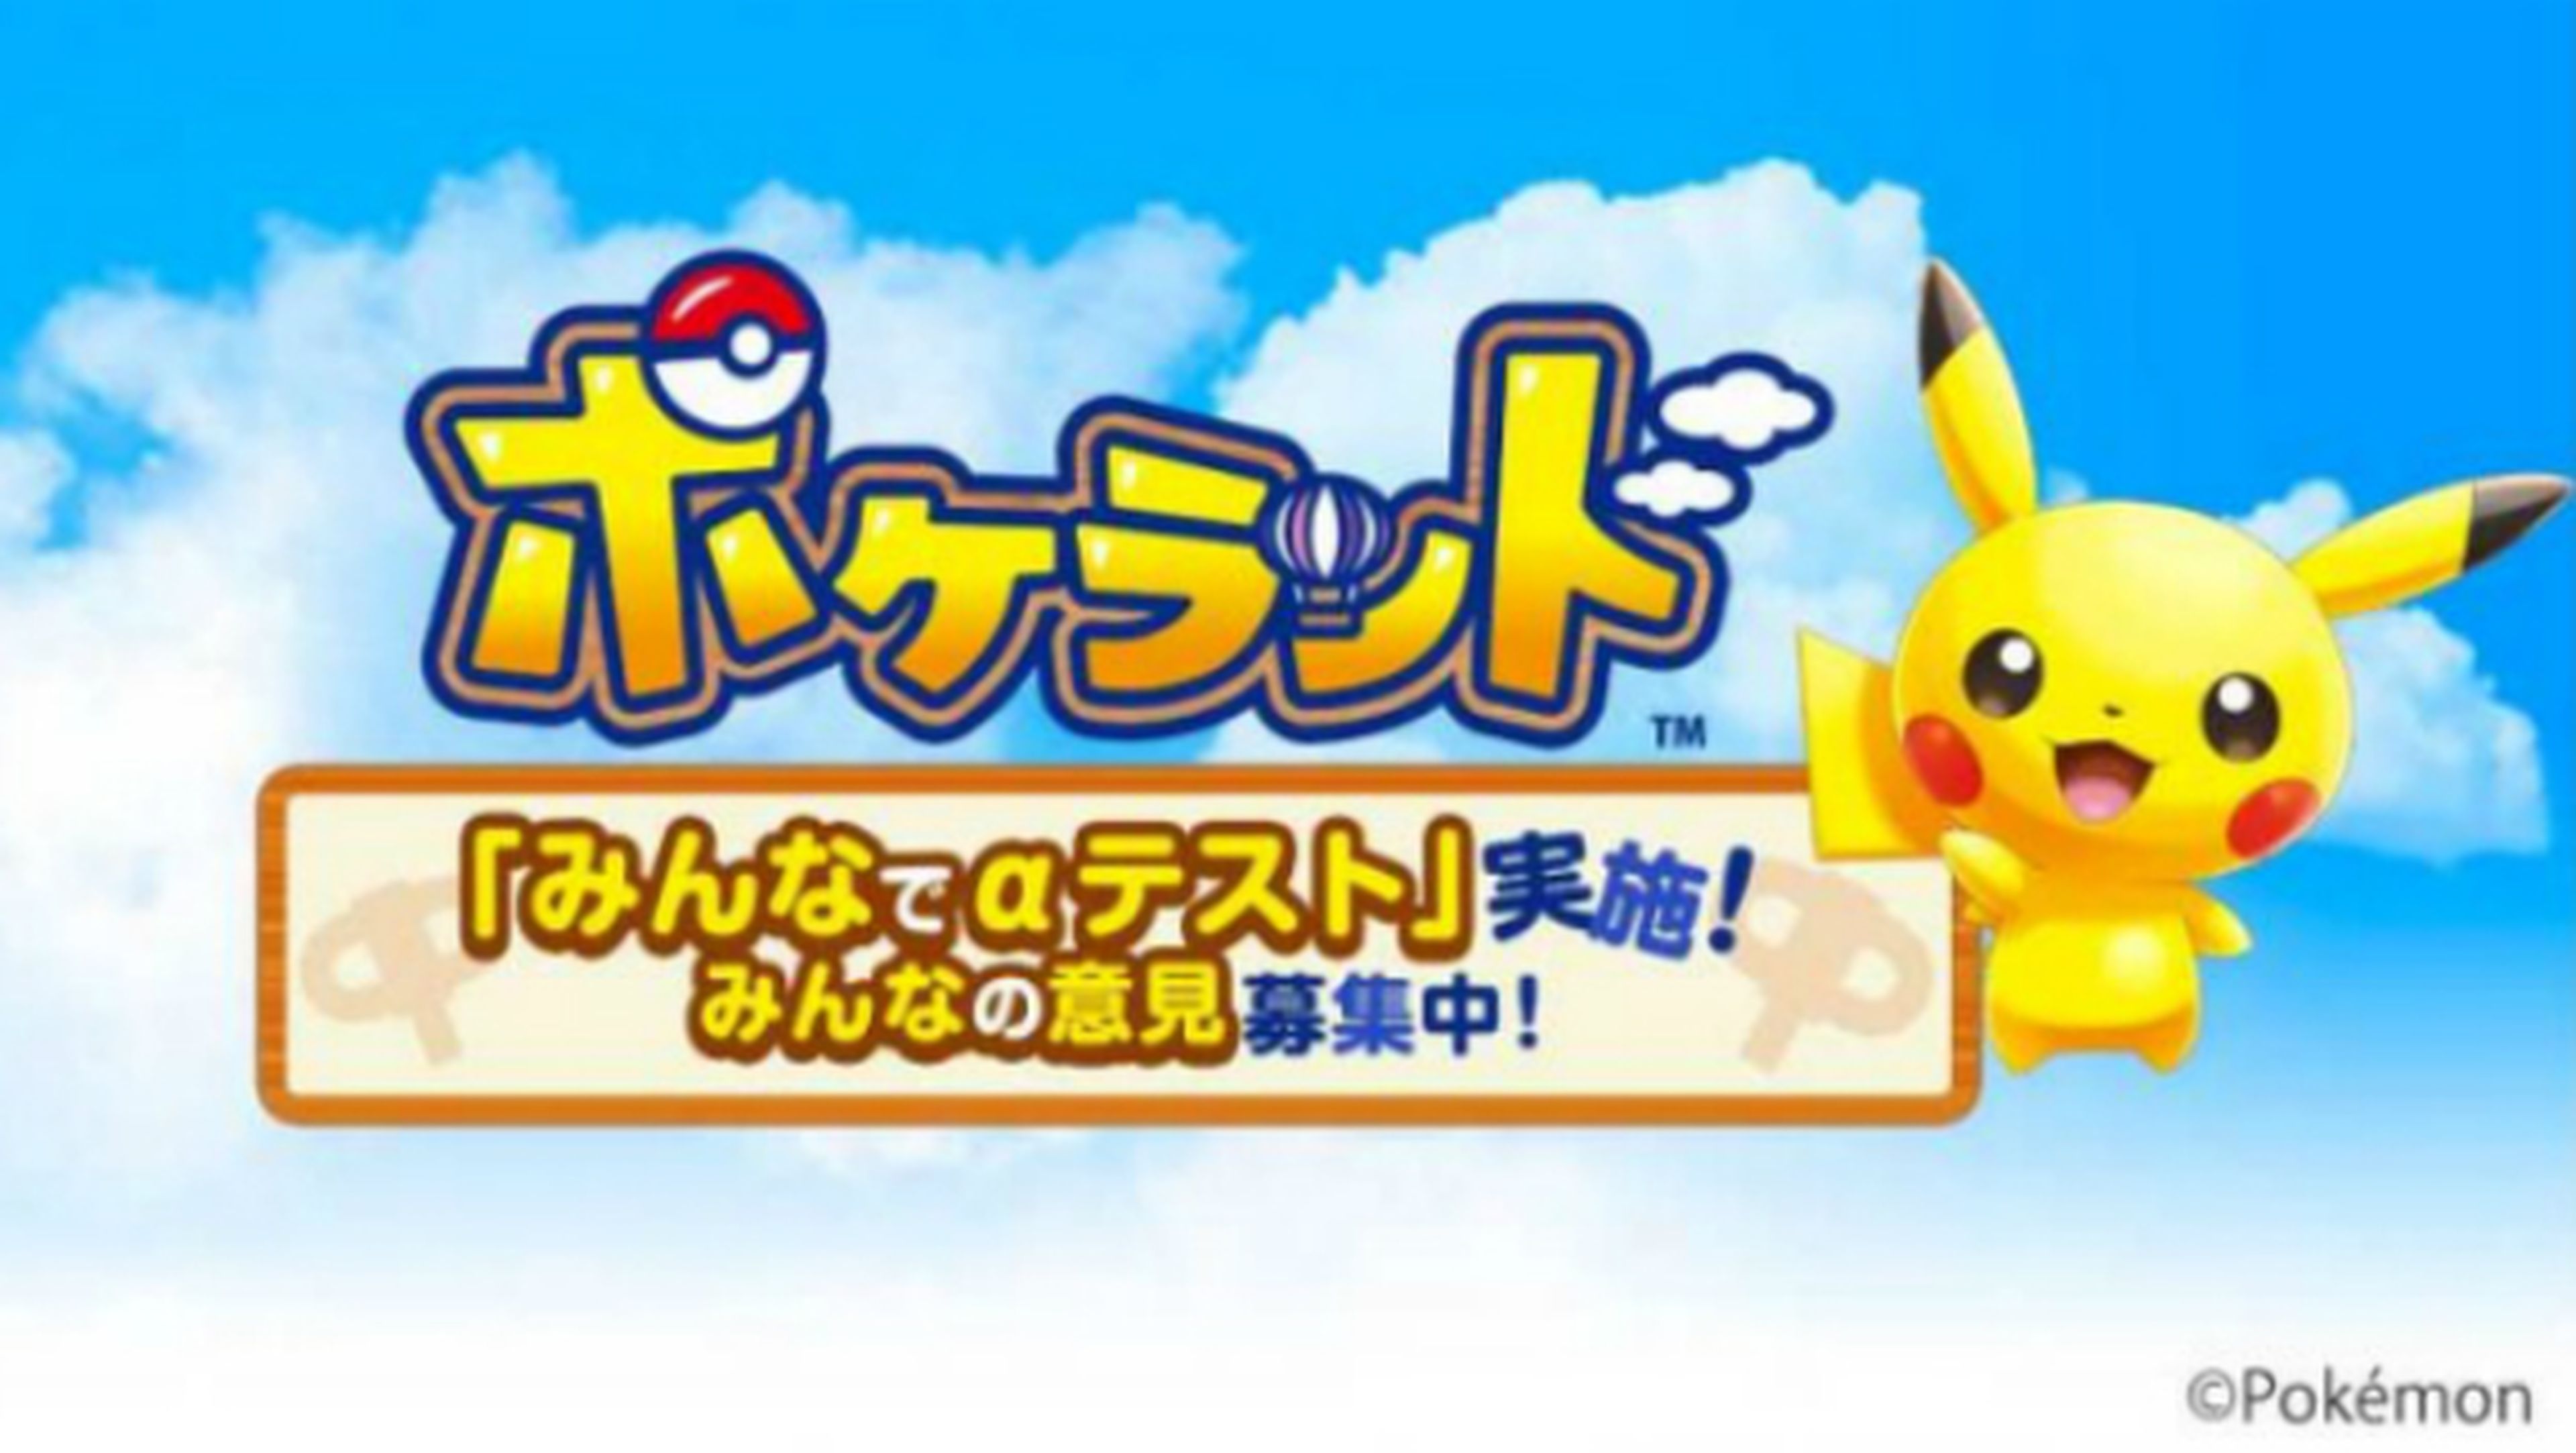 Pokéland, nuevo juego gratis de Pokémon para móviles Android.